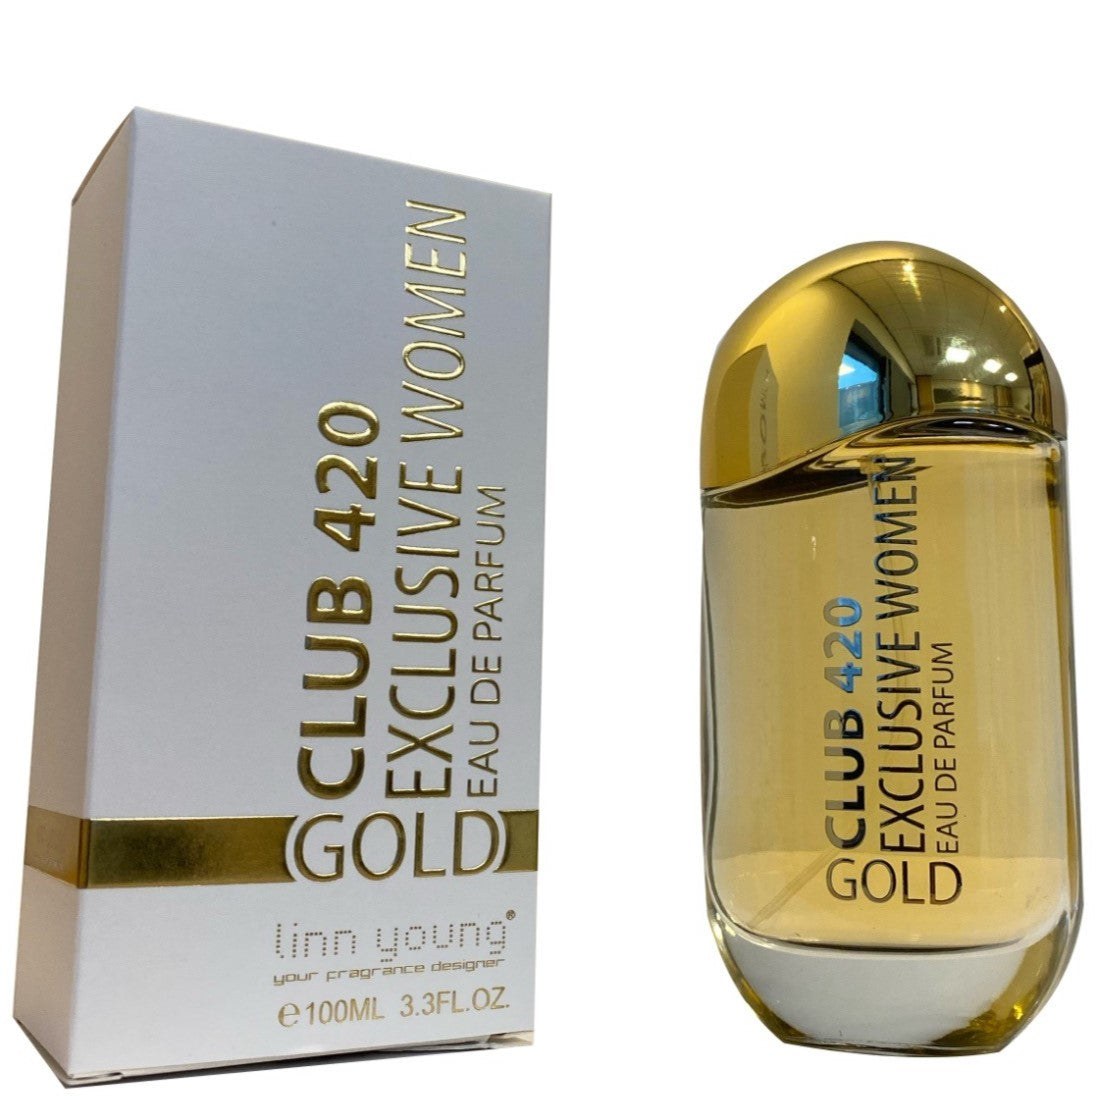 100 ml Eau de Perfume CLUB 420 GOLD - Itämainen ja Vaniljainen Tuoksu Naisille, korkea 10%:n hajusteöljypitoisuus